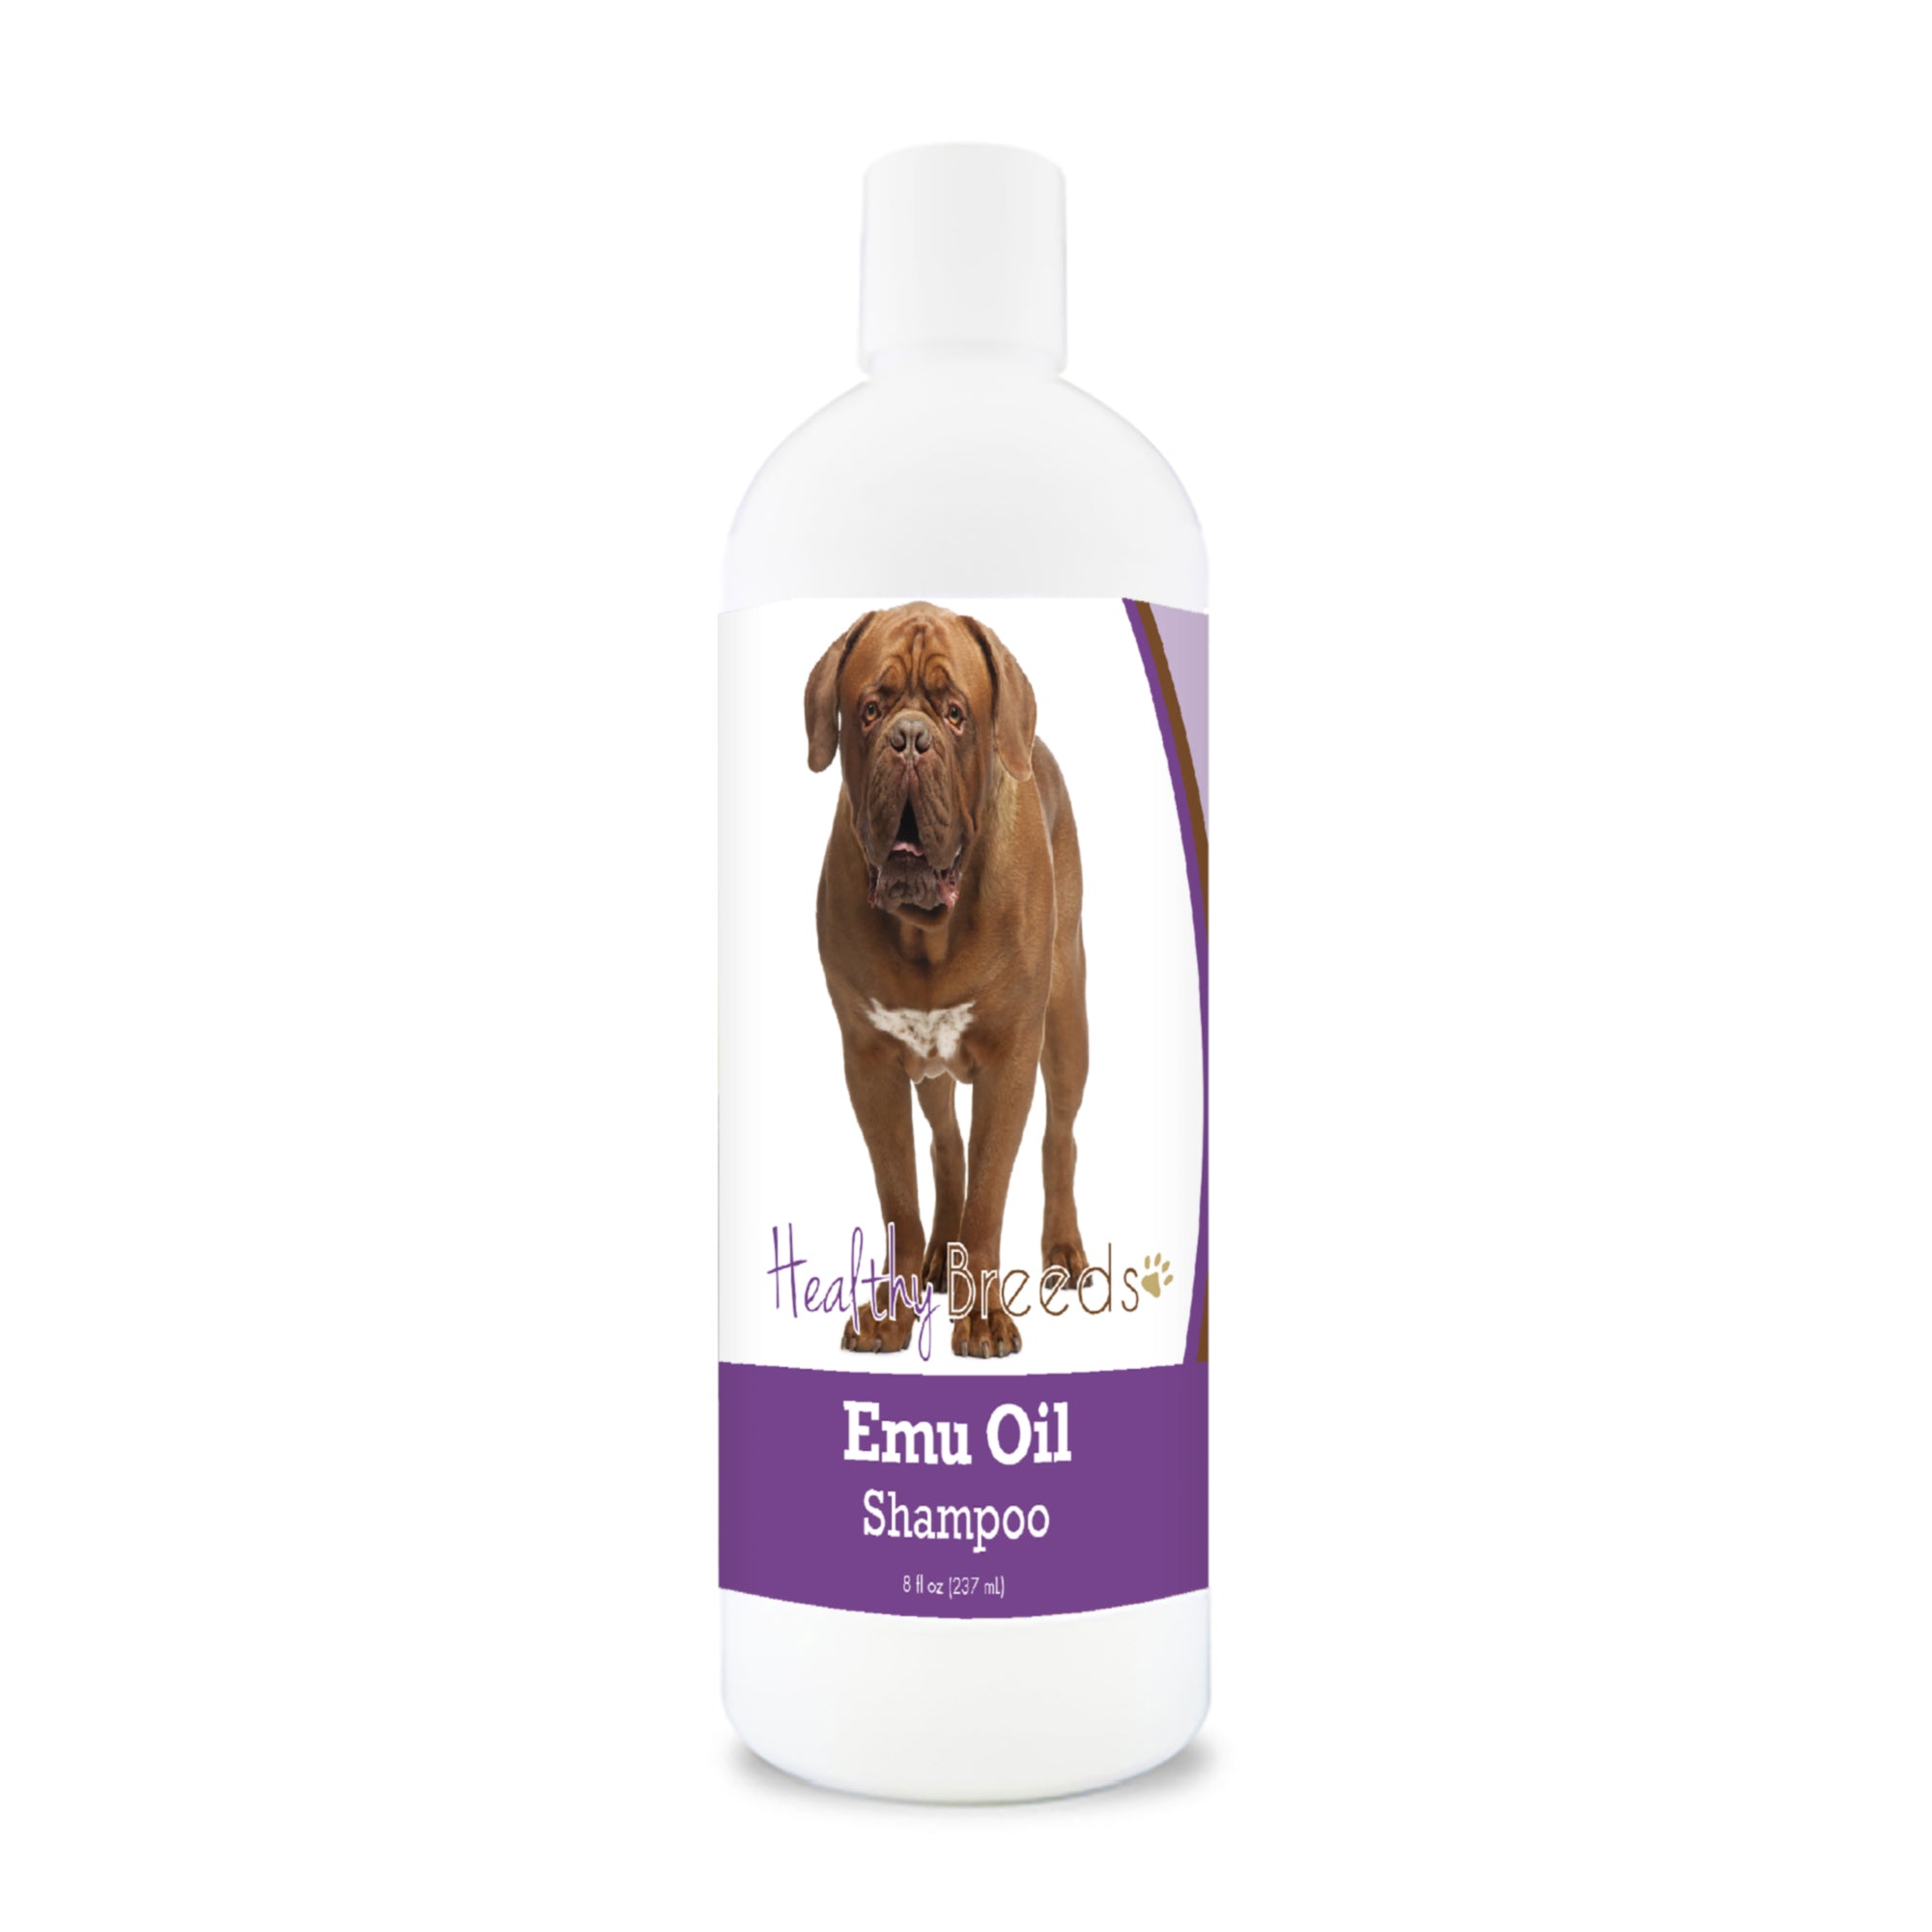 Dogue de Bordeaux Emu Oil Shampoo 8 oz